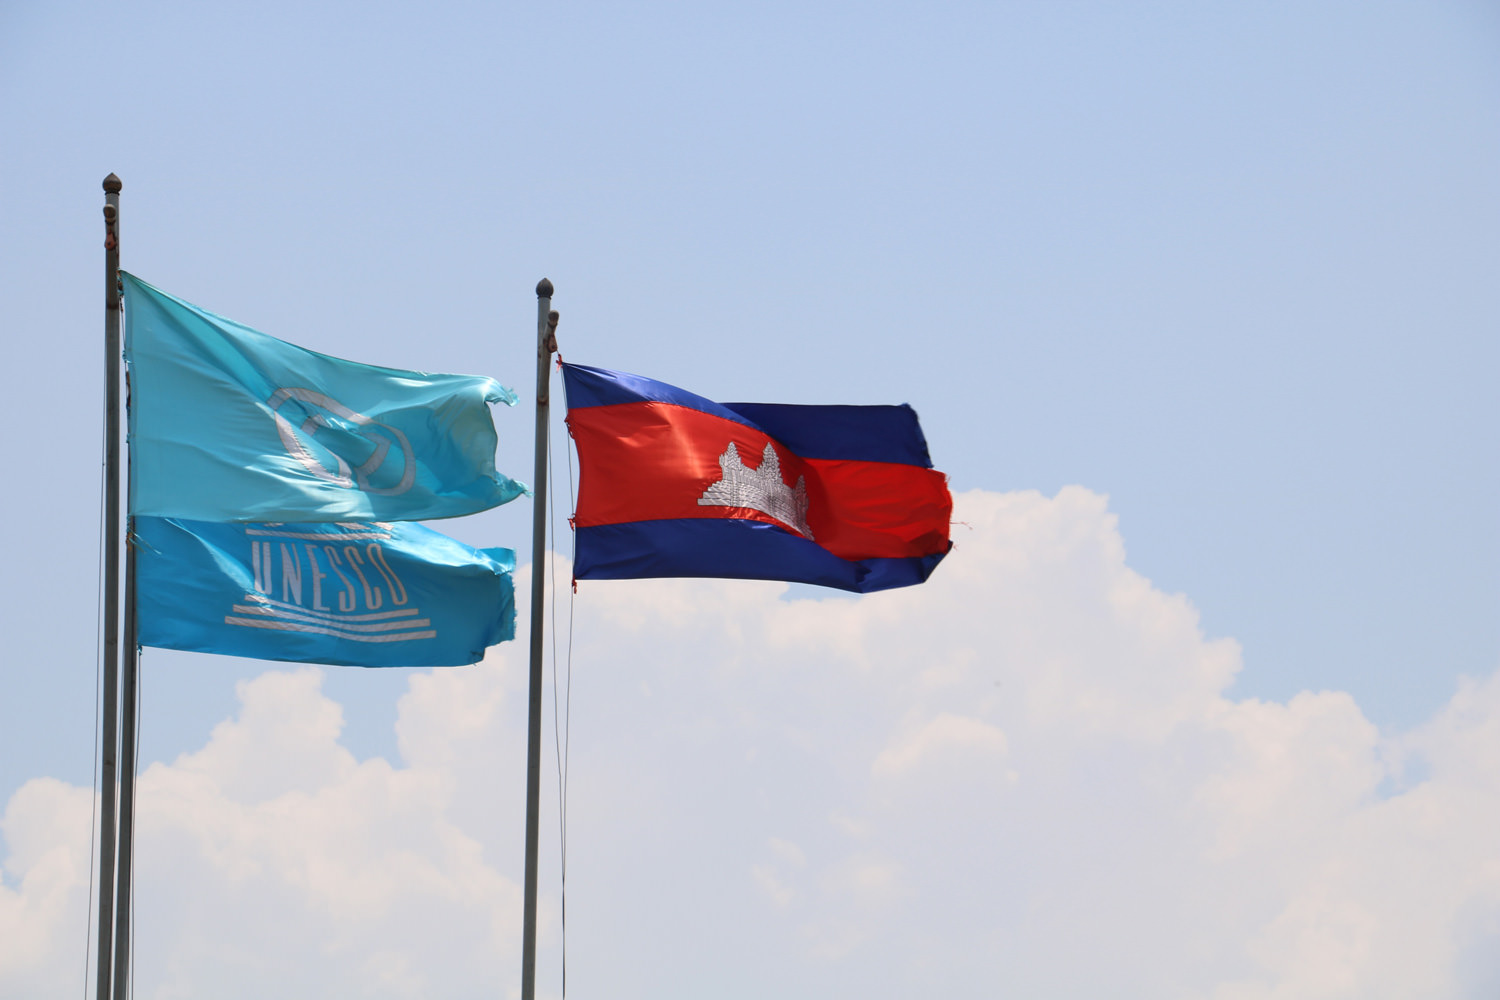 カンボジアの国旗とユネスコの旗